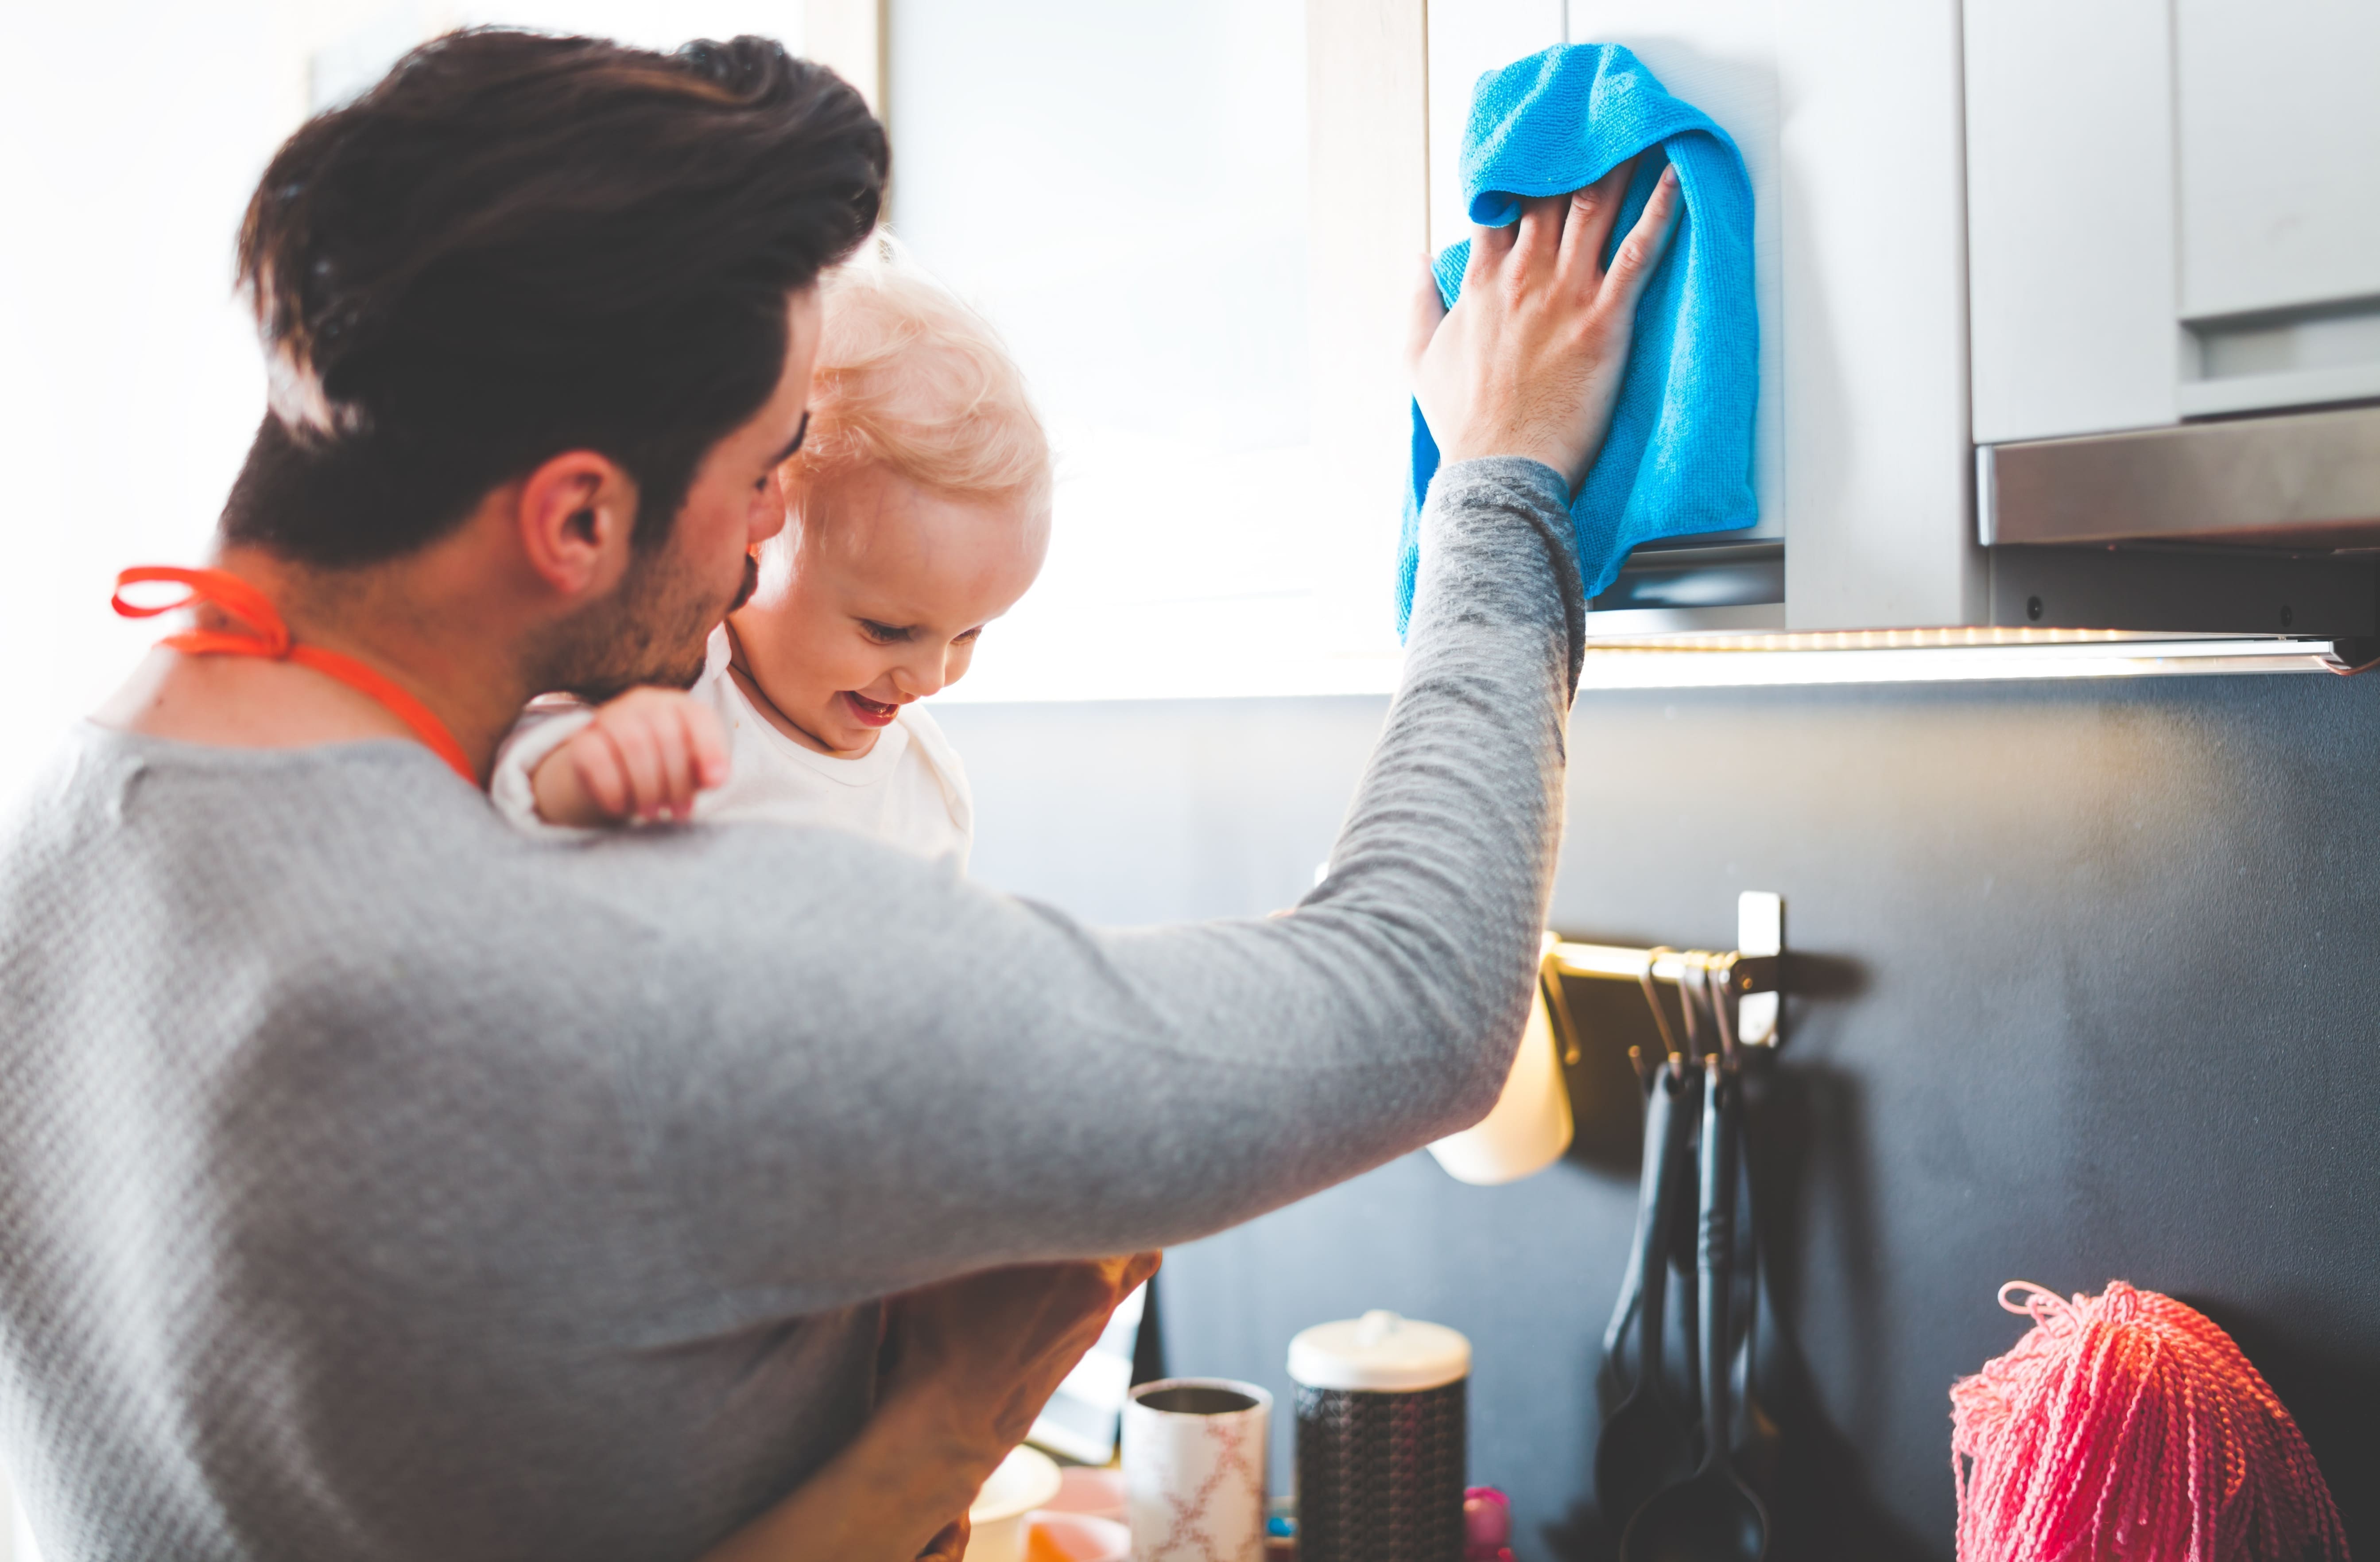 Un padre joven limpia la cocina mientras sostiene a su hija.